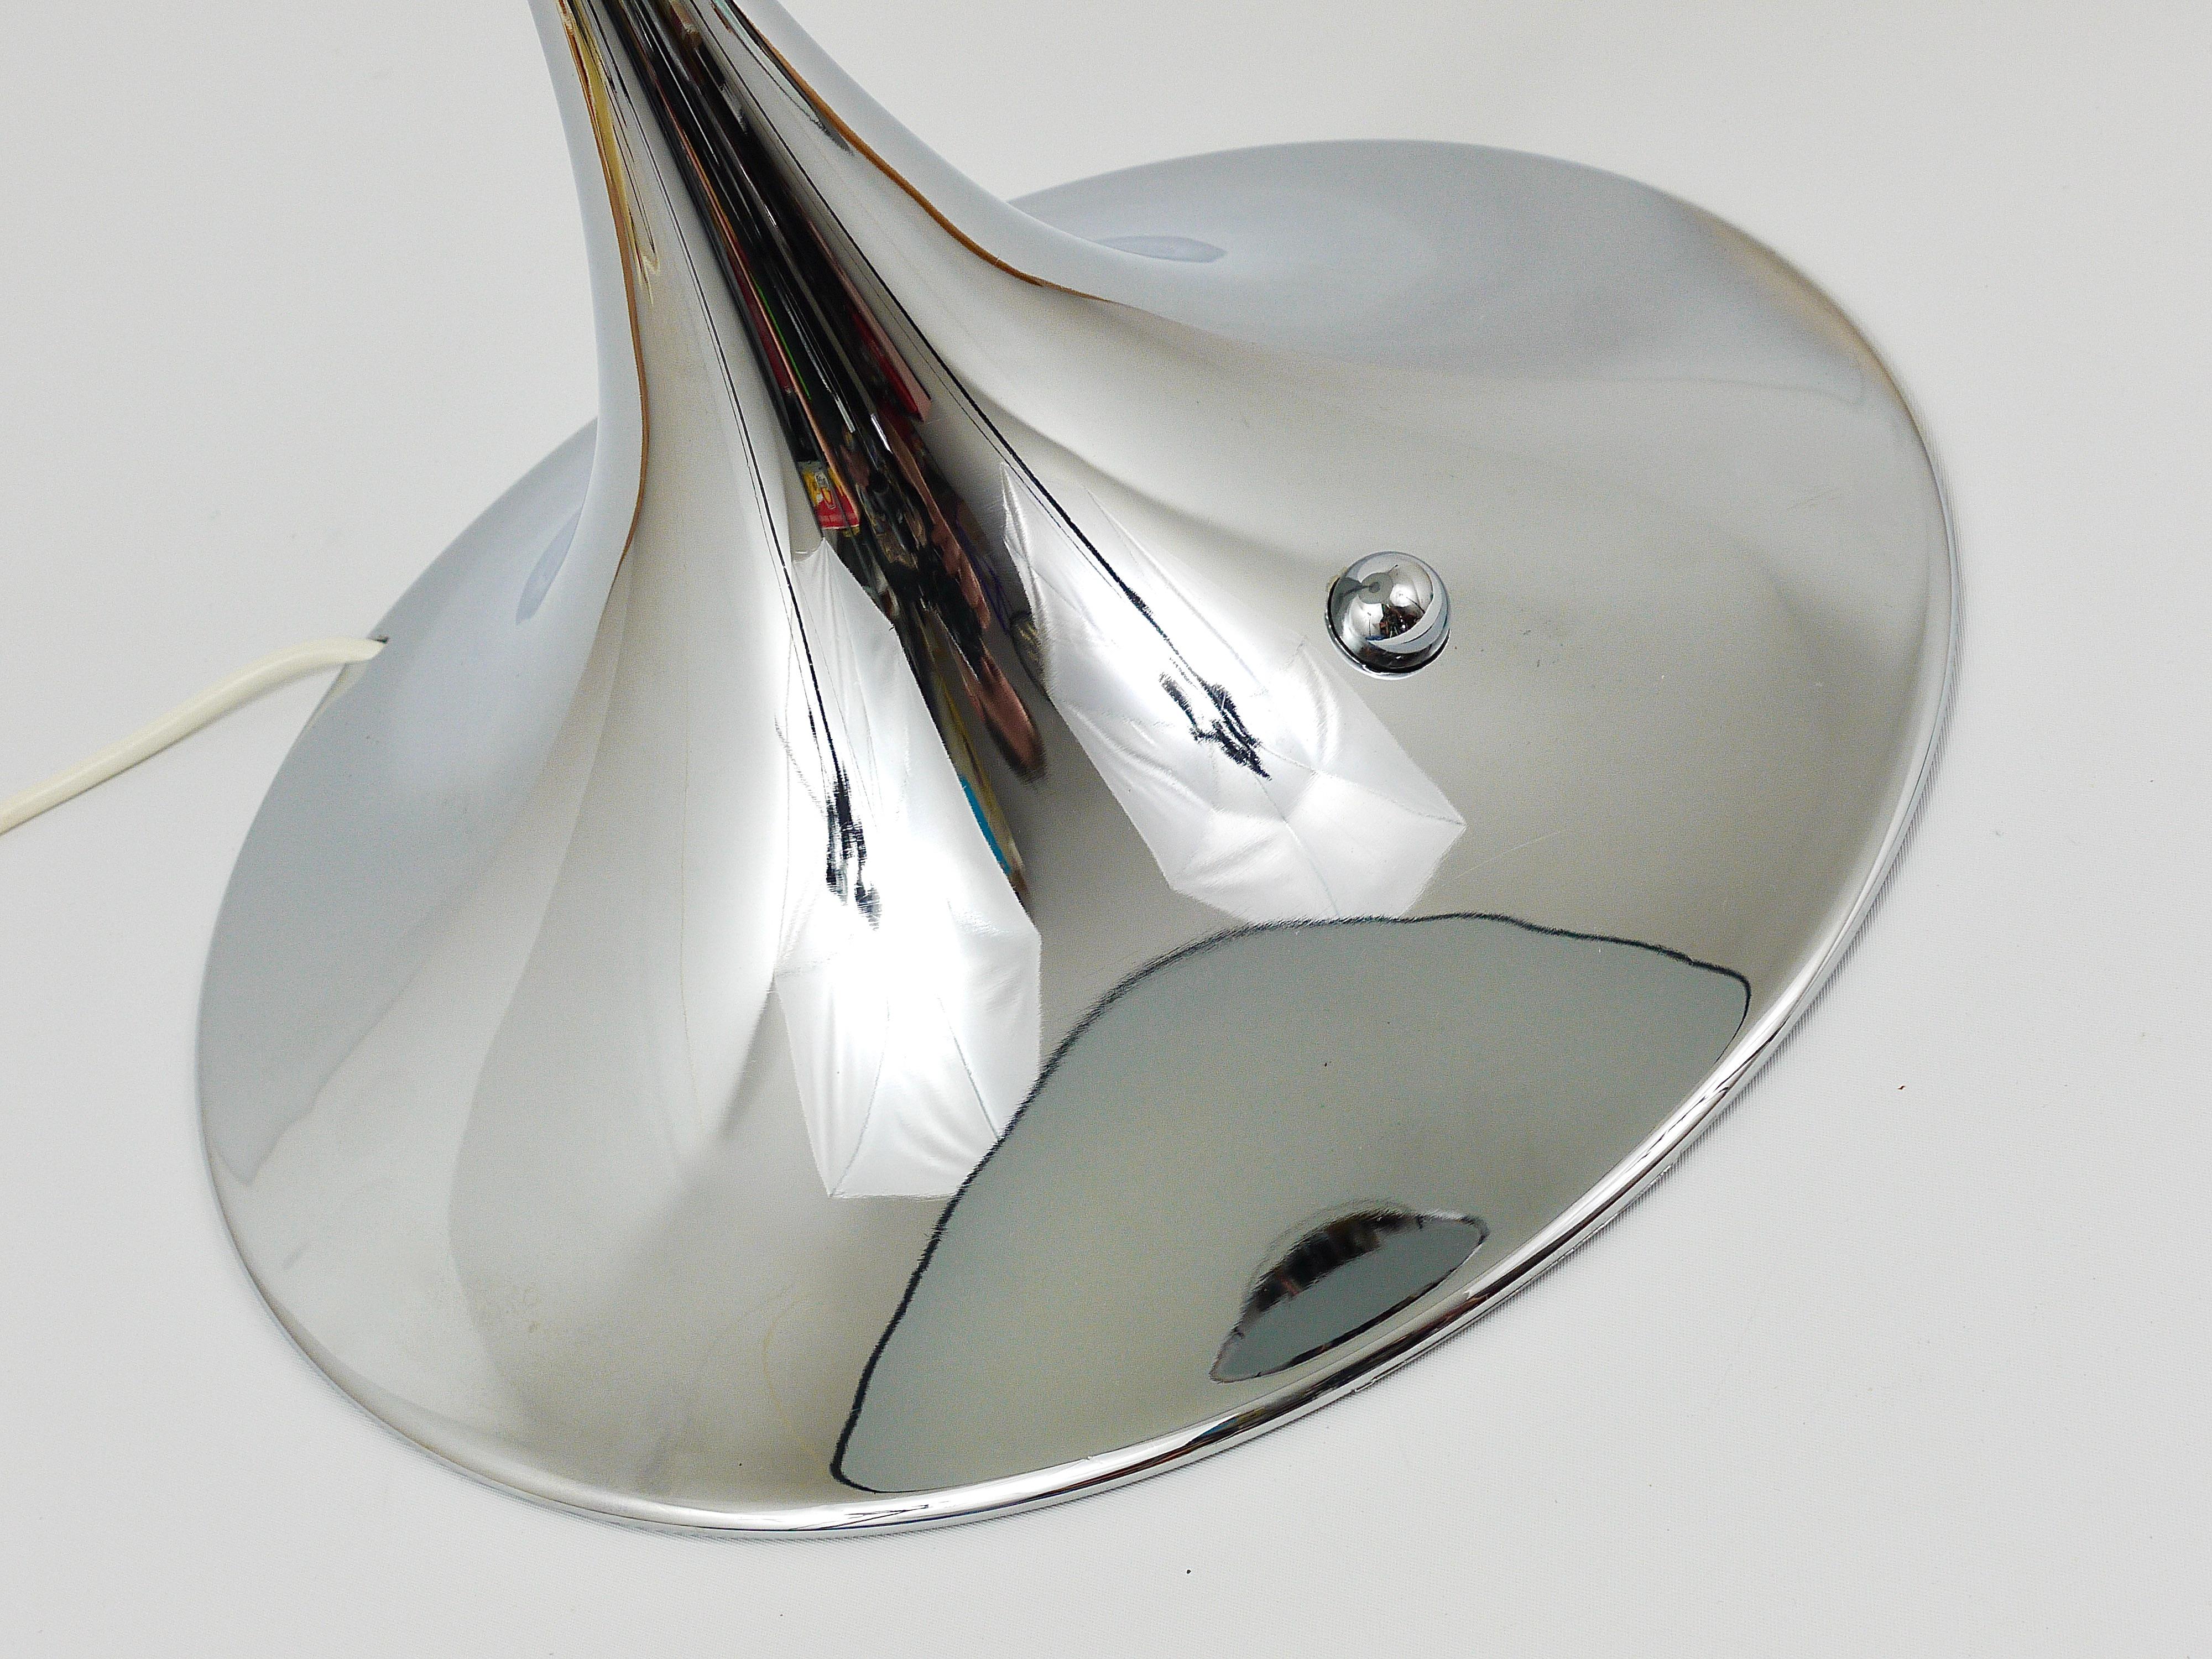 Une grande lampe champignon de table ou d'appoint iconique, conçue en 1971 par le designer danois Verner Panton, exécutée par Louis Poulsen. Il s'agit de l'une des rares premières éditions chromées du début des années 1970, avec une base entièrement